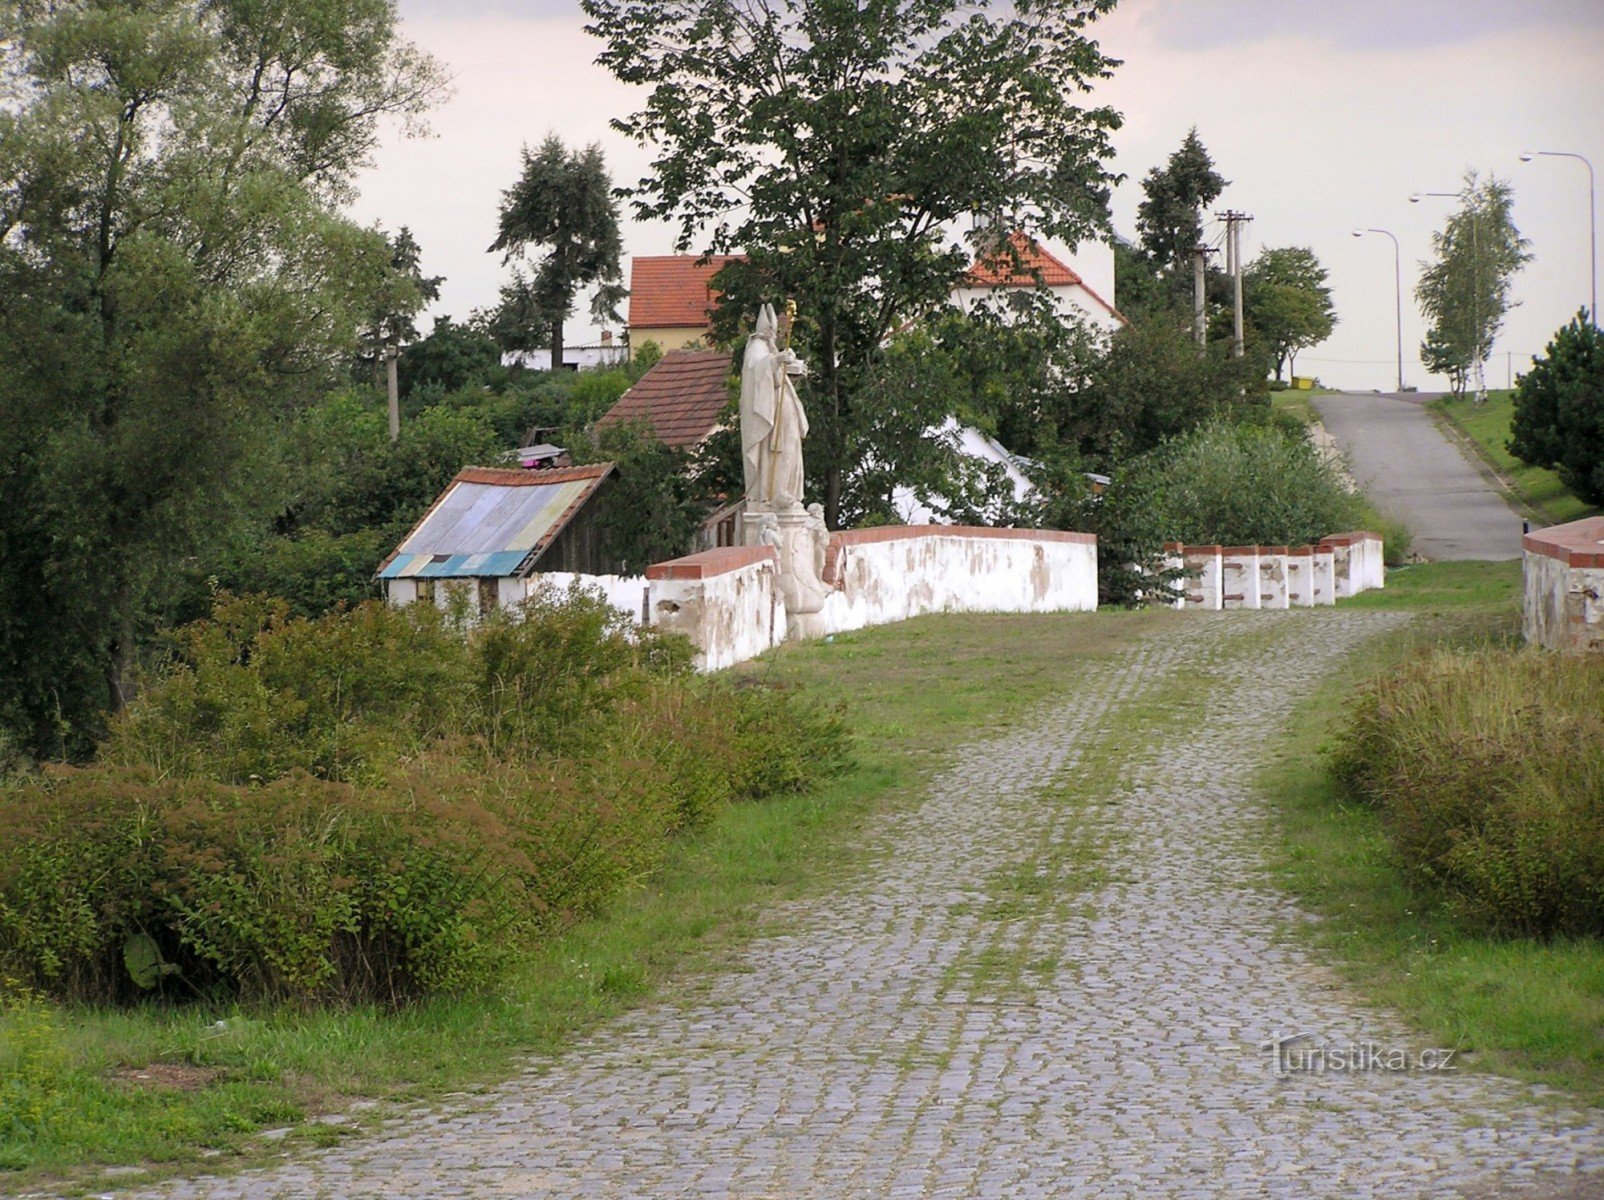 uma seção bem preservada da antiga estrada imperial pavimentada com uma ponte (uma estátua de São Nicolau nela)